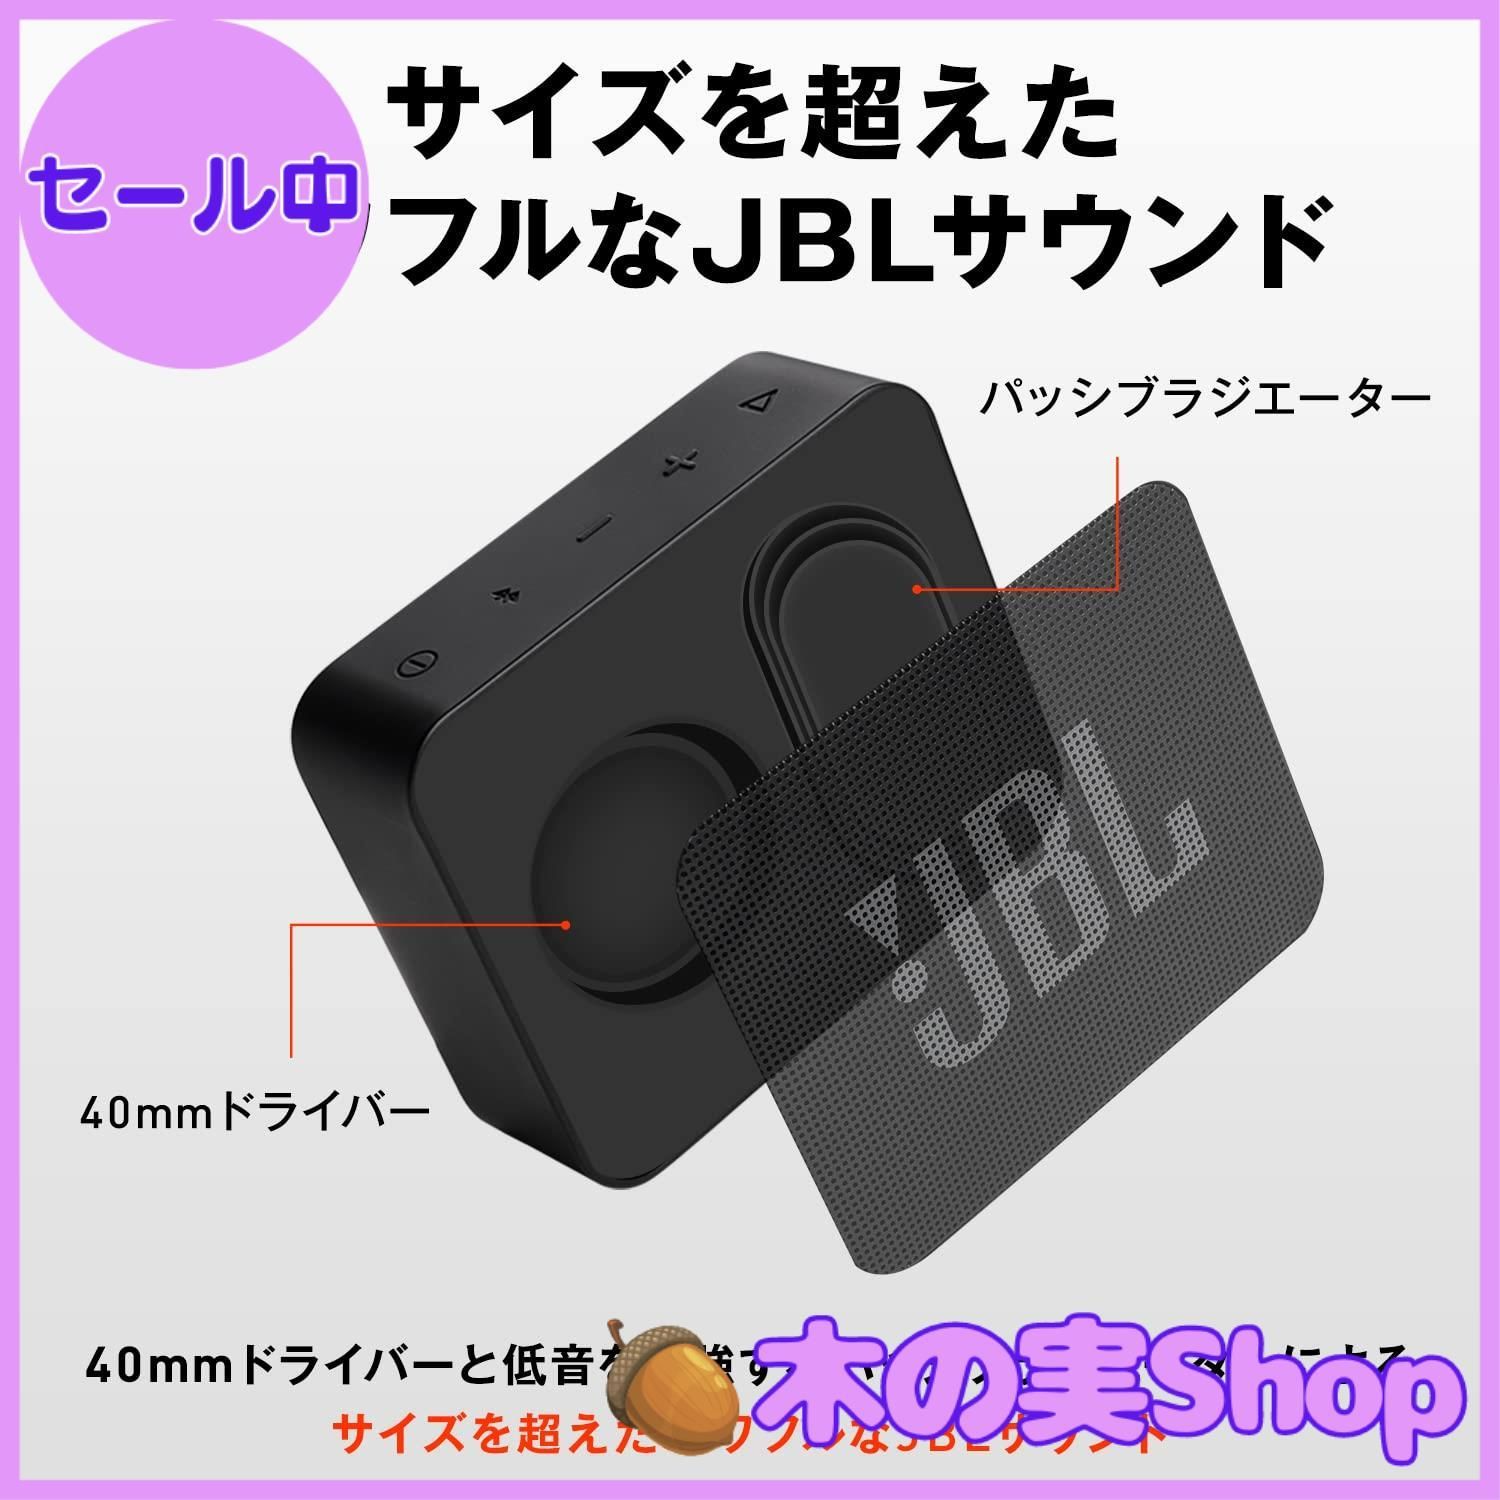 JBL公式限定 Bluetooth スピーカー GO ESSENTIAL ポータブルスピーカー ブルートゥース 防水 アウトドア  かわいい おしゃれ 浴室 お風呂 ギフト